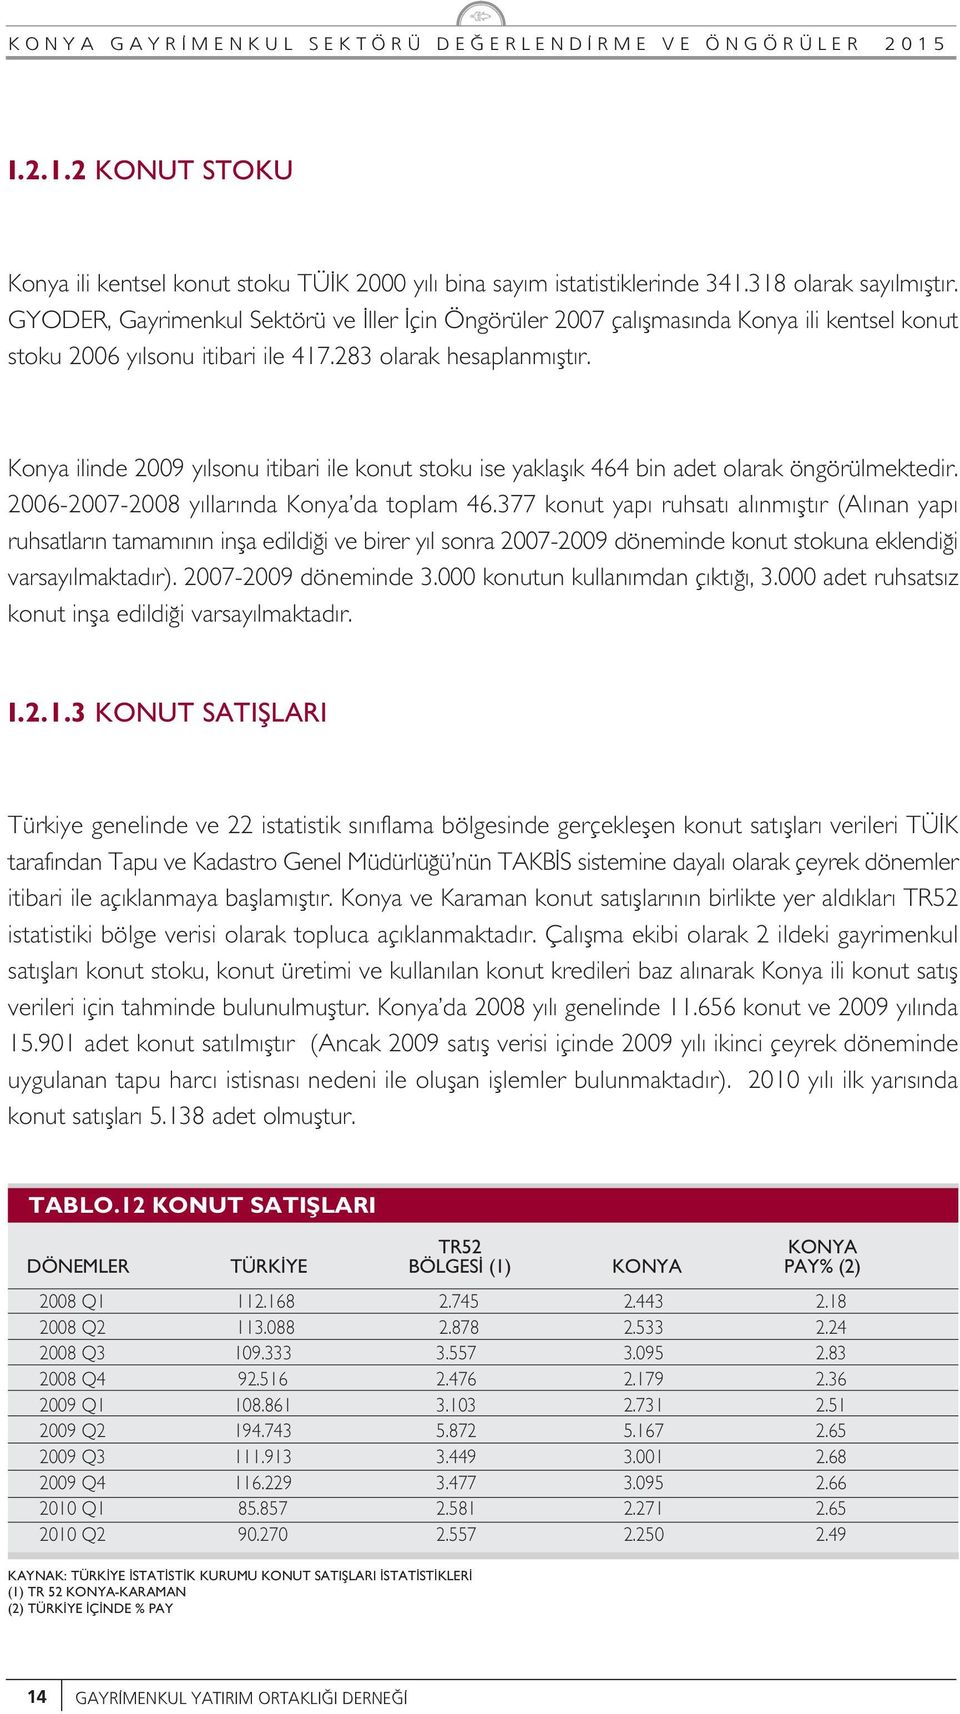 Konya ilinde 2009 y lsonu itibari ile konut stoku ise yaklafl k 464 bin adet olarak öngörülmektedir. 2006-2007-2008 y llar nda Konya da toplam 46.